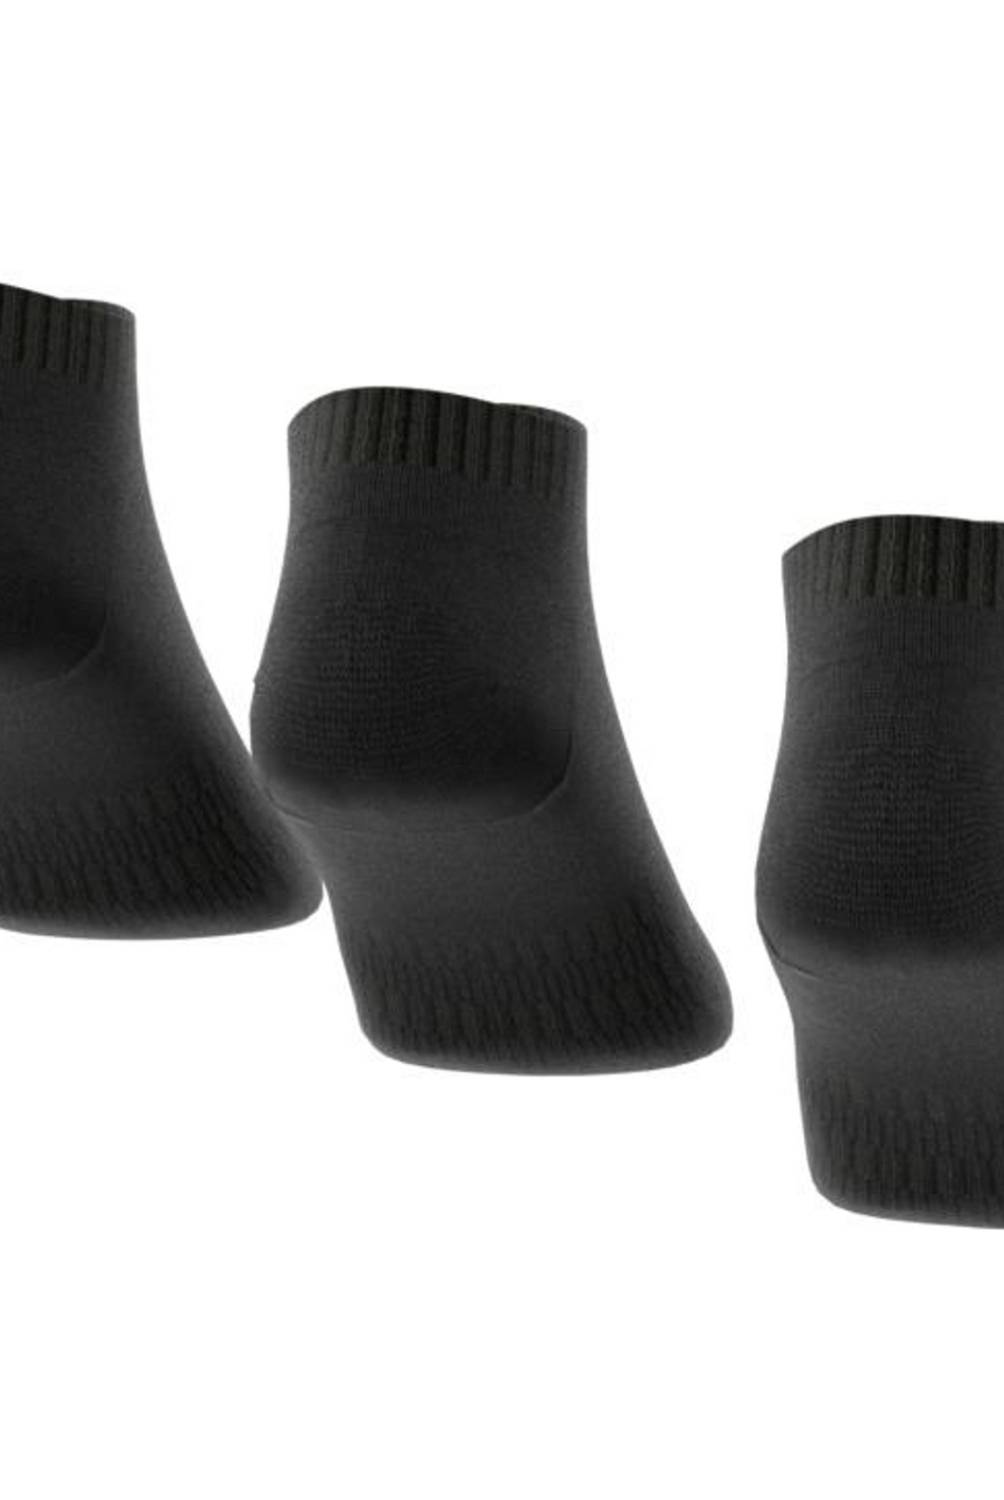 ADIDAS - Pack De 3 Calcetines Cortos Deportivos Unisex Adidas